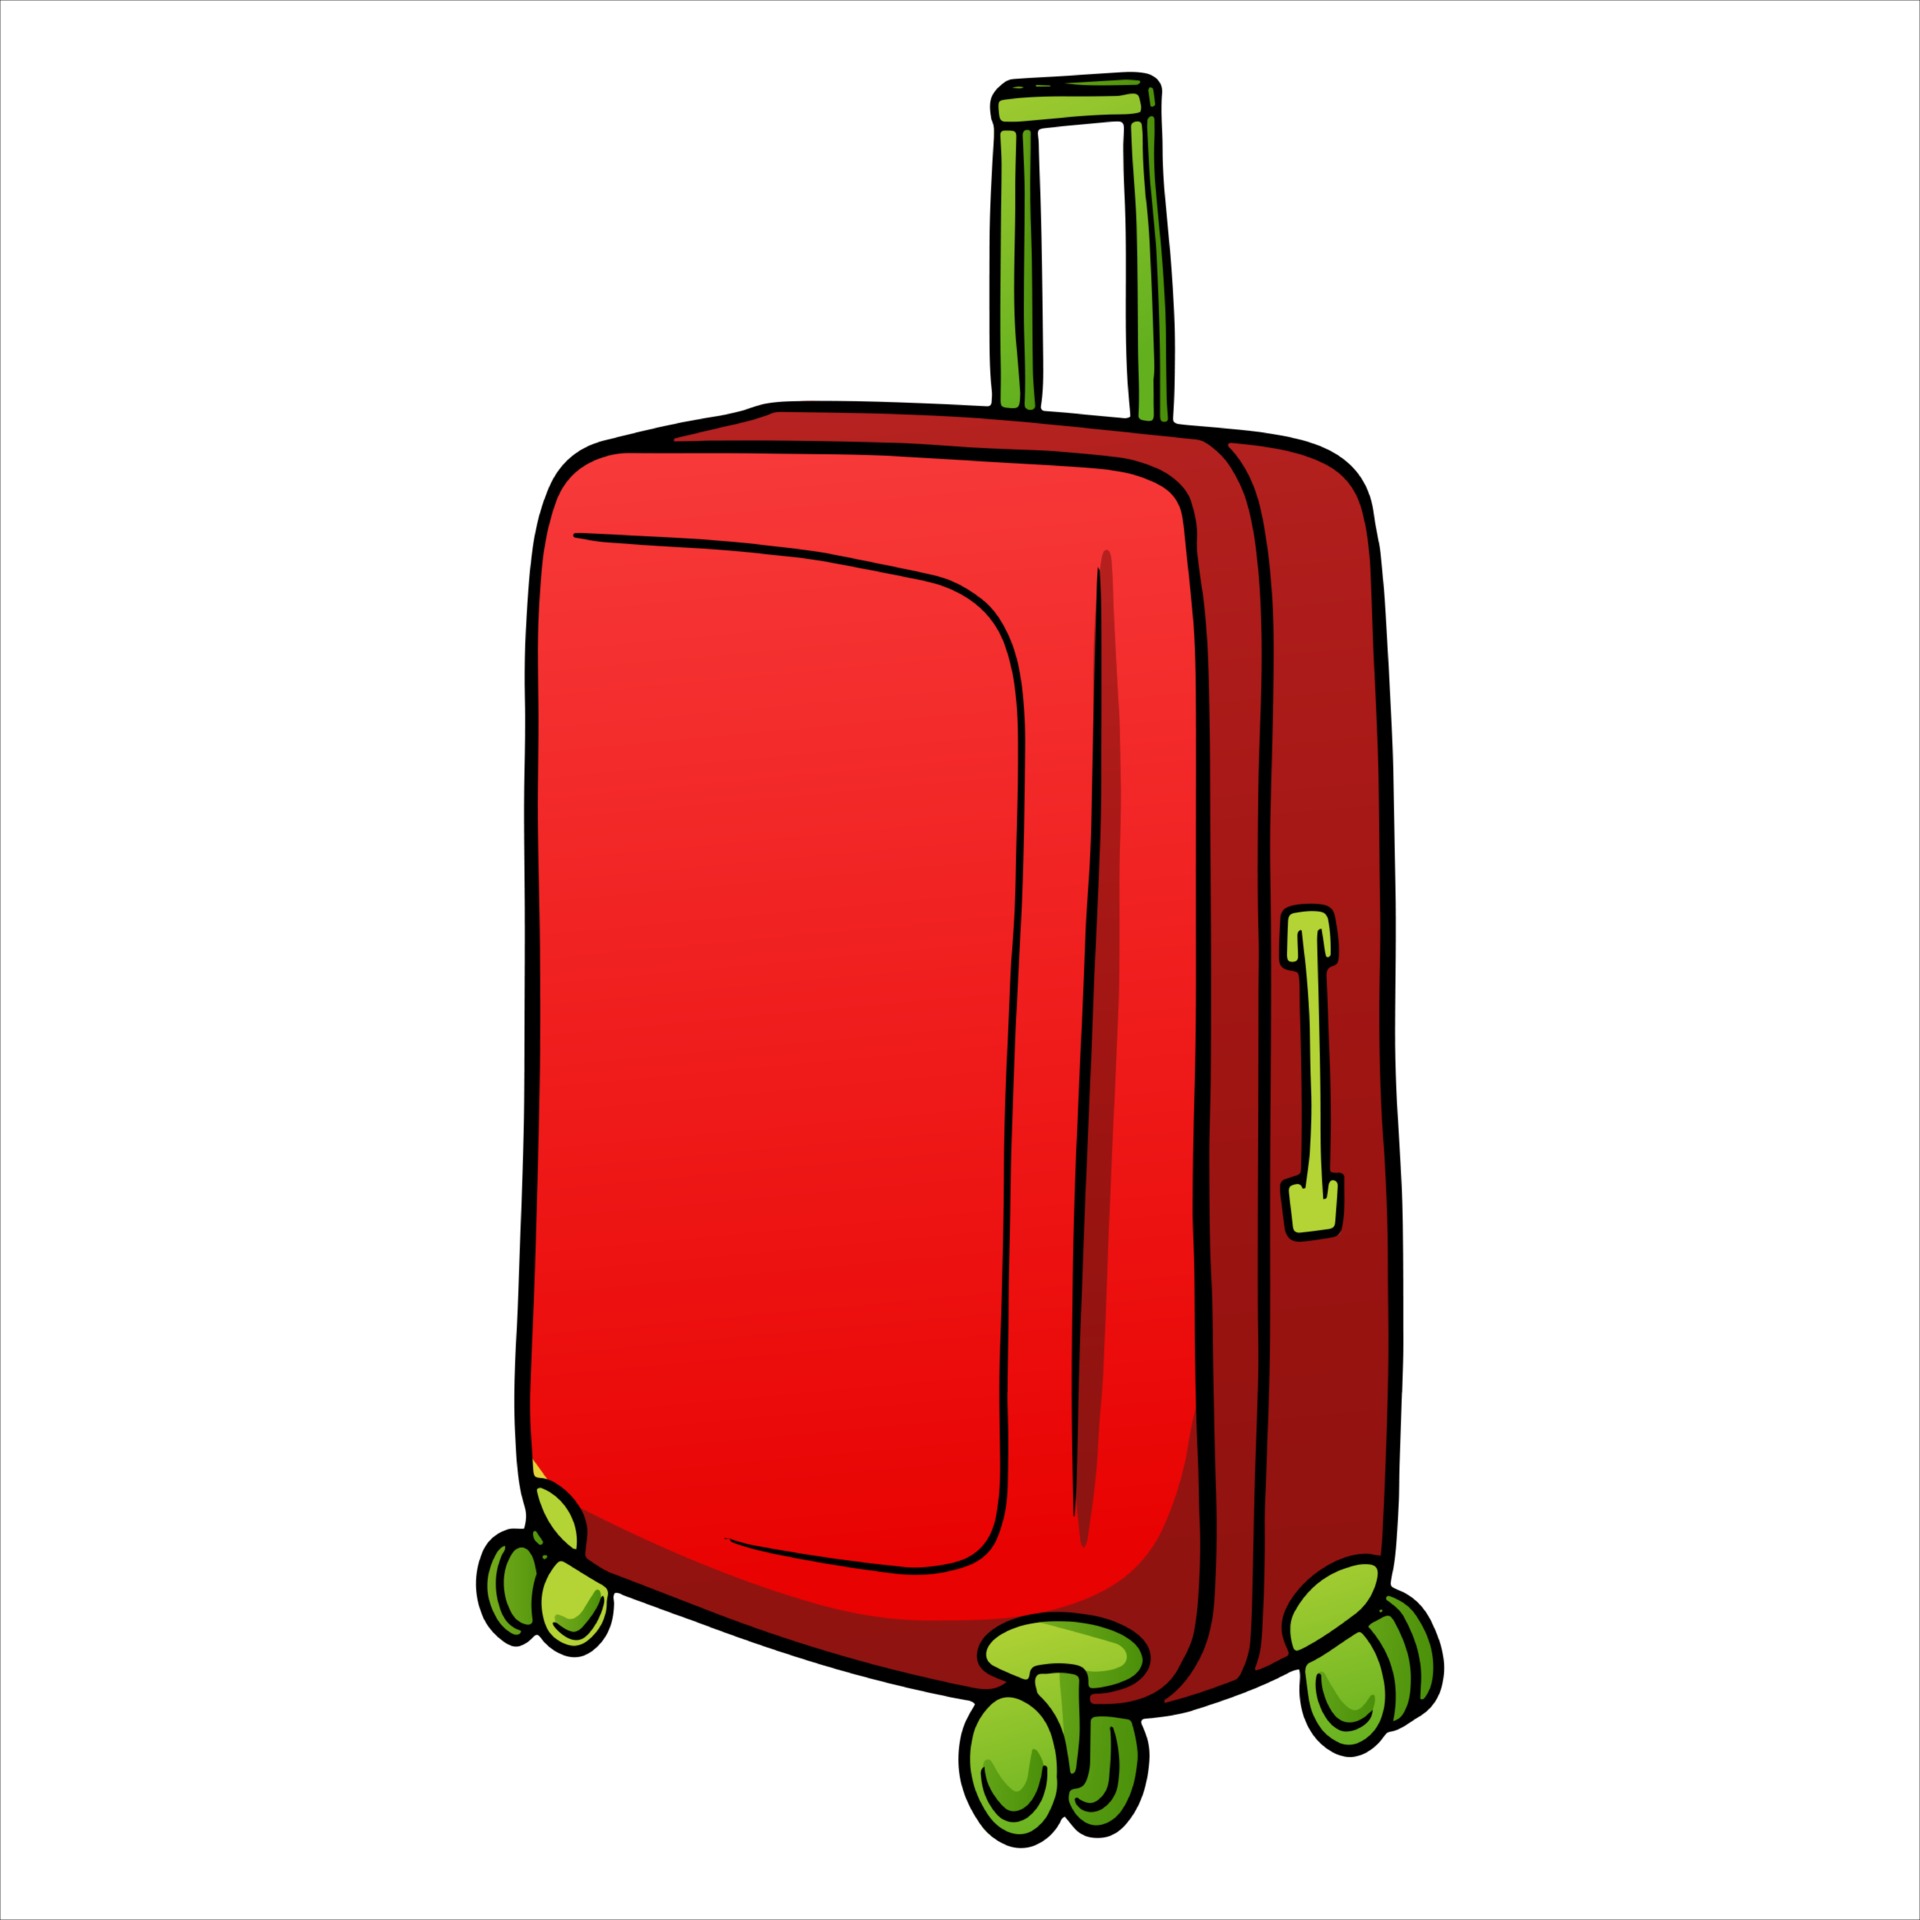 Gevoelig voor krab Overgang items voor transport rode koffer op wielen in cartoon-stijl 2511572  Vectorkunst bij Vecteezy